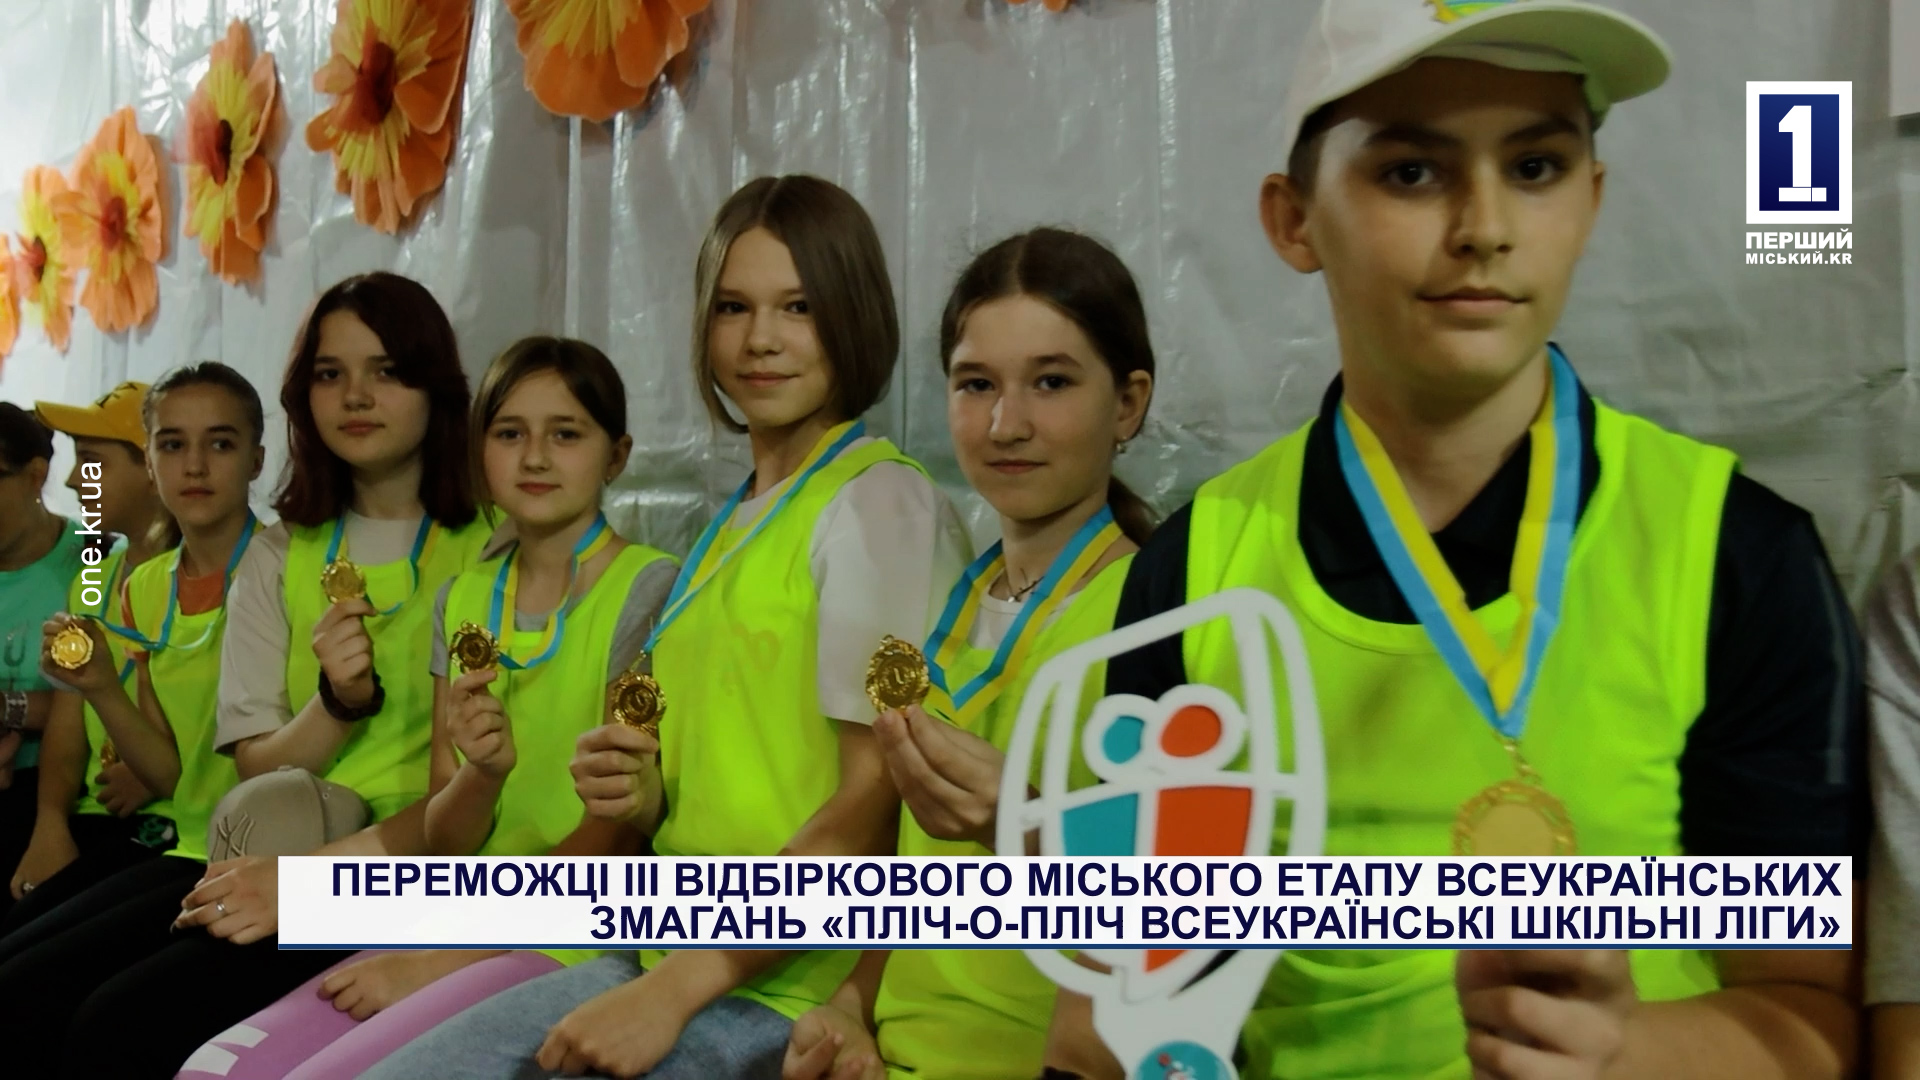 Переможці III відбіркового міського етапу змагань «Пліч-о-пліч всеукраїнські шкільні ліги»